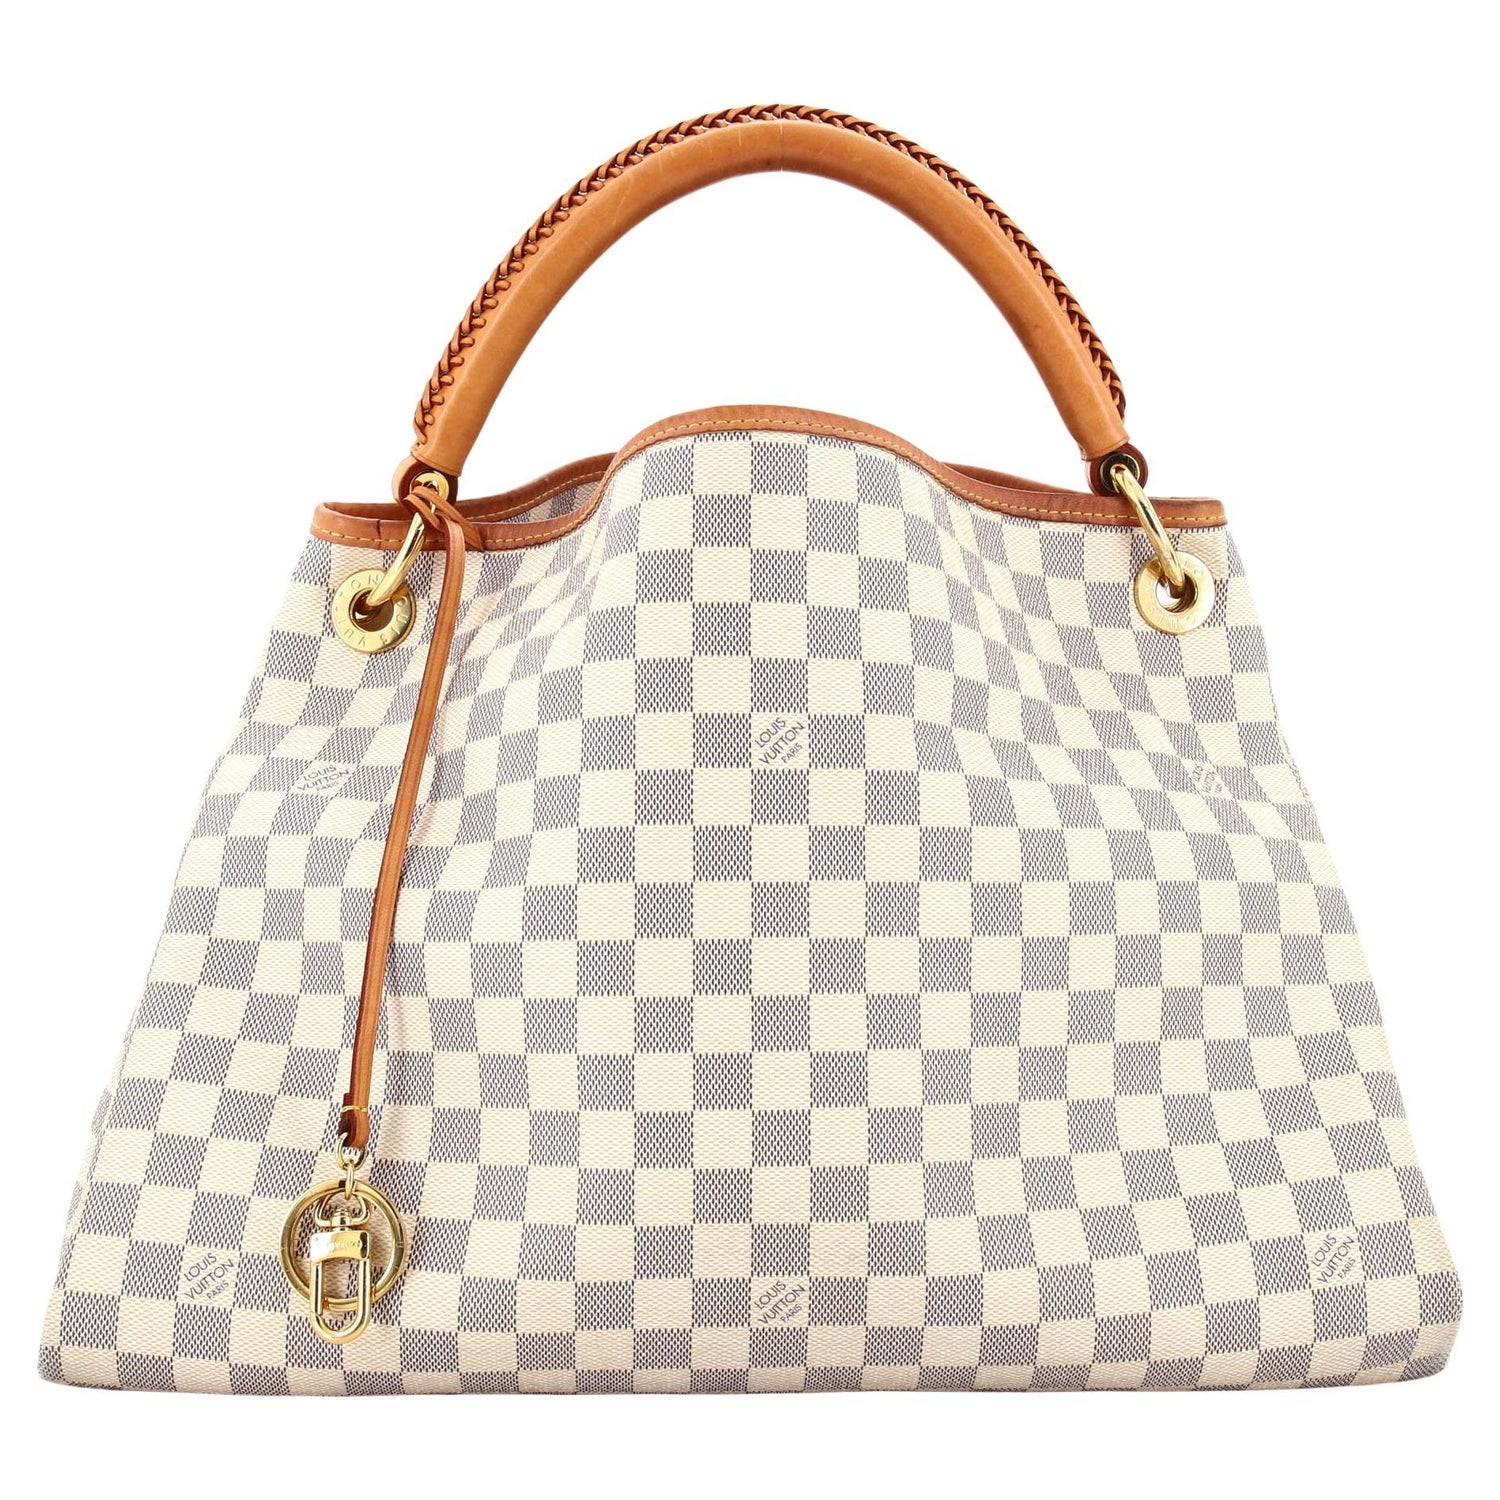 Louis Vuitton Artsy Bag Review 